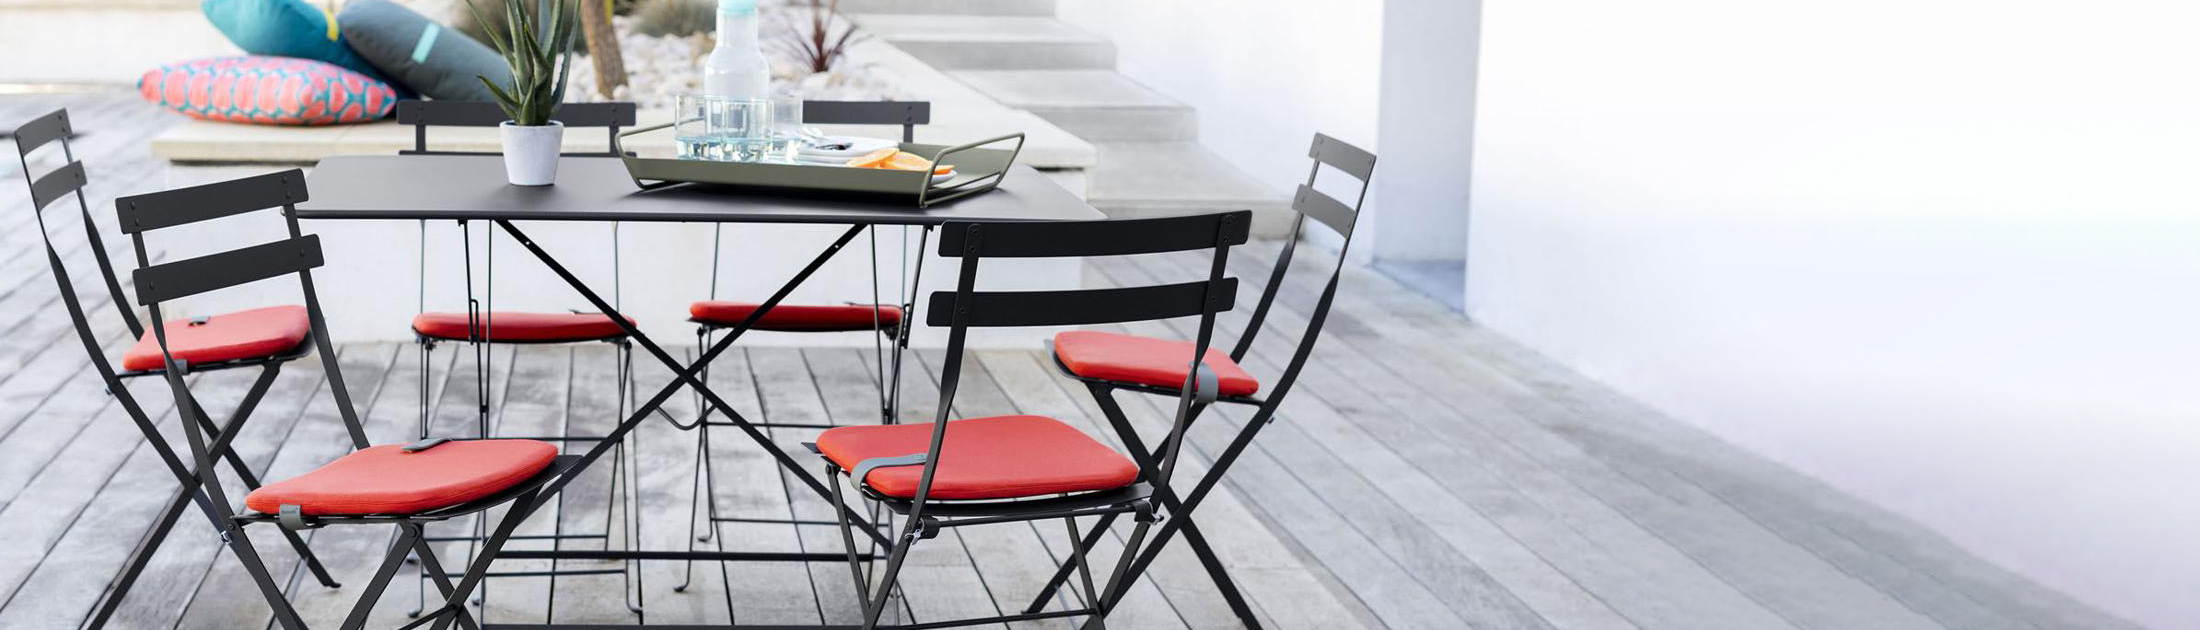 Housse de Protection Pour Table – Fermob – 210 x 100 Cm